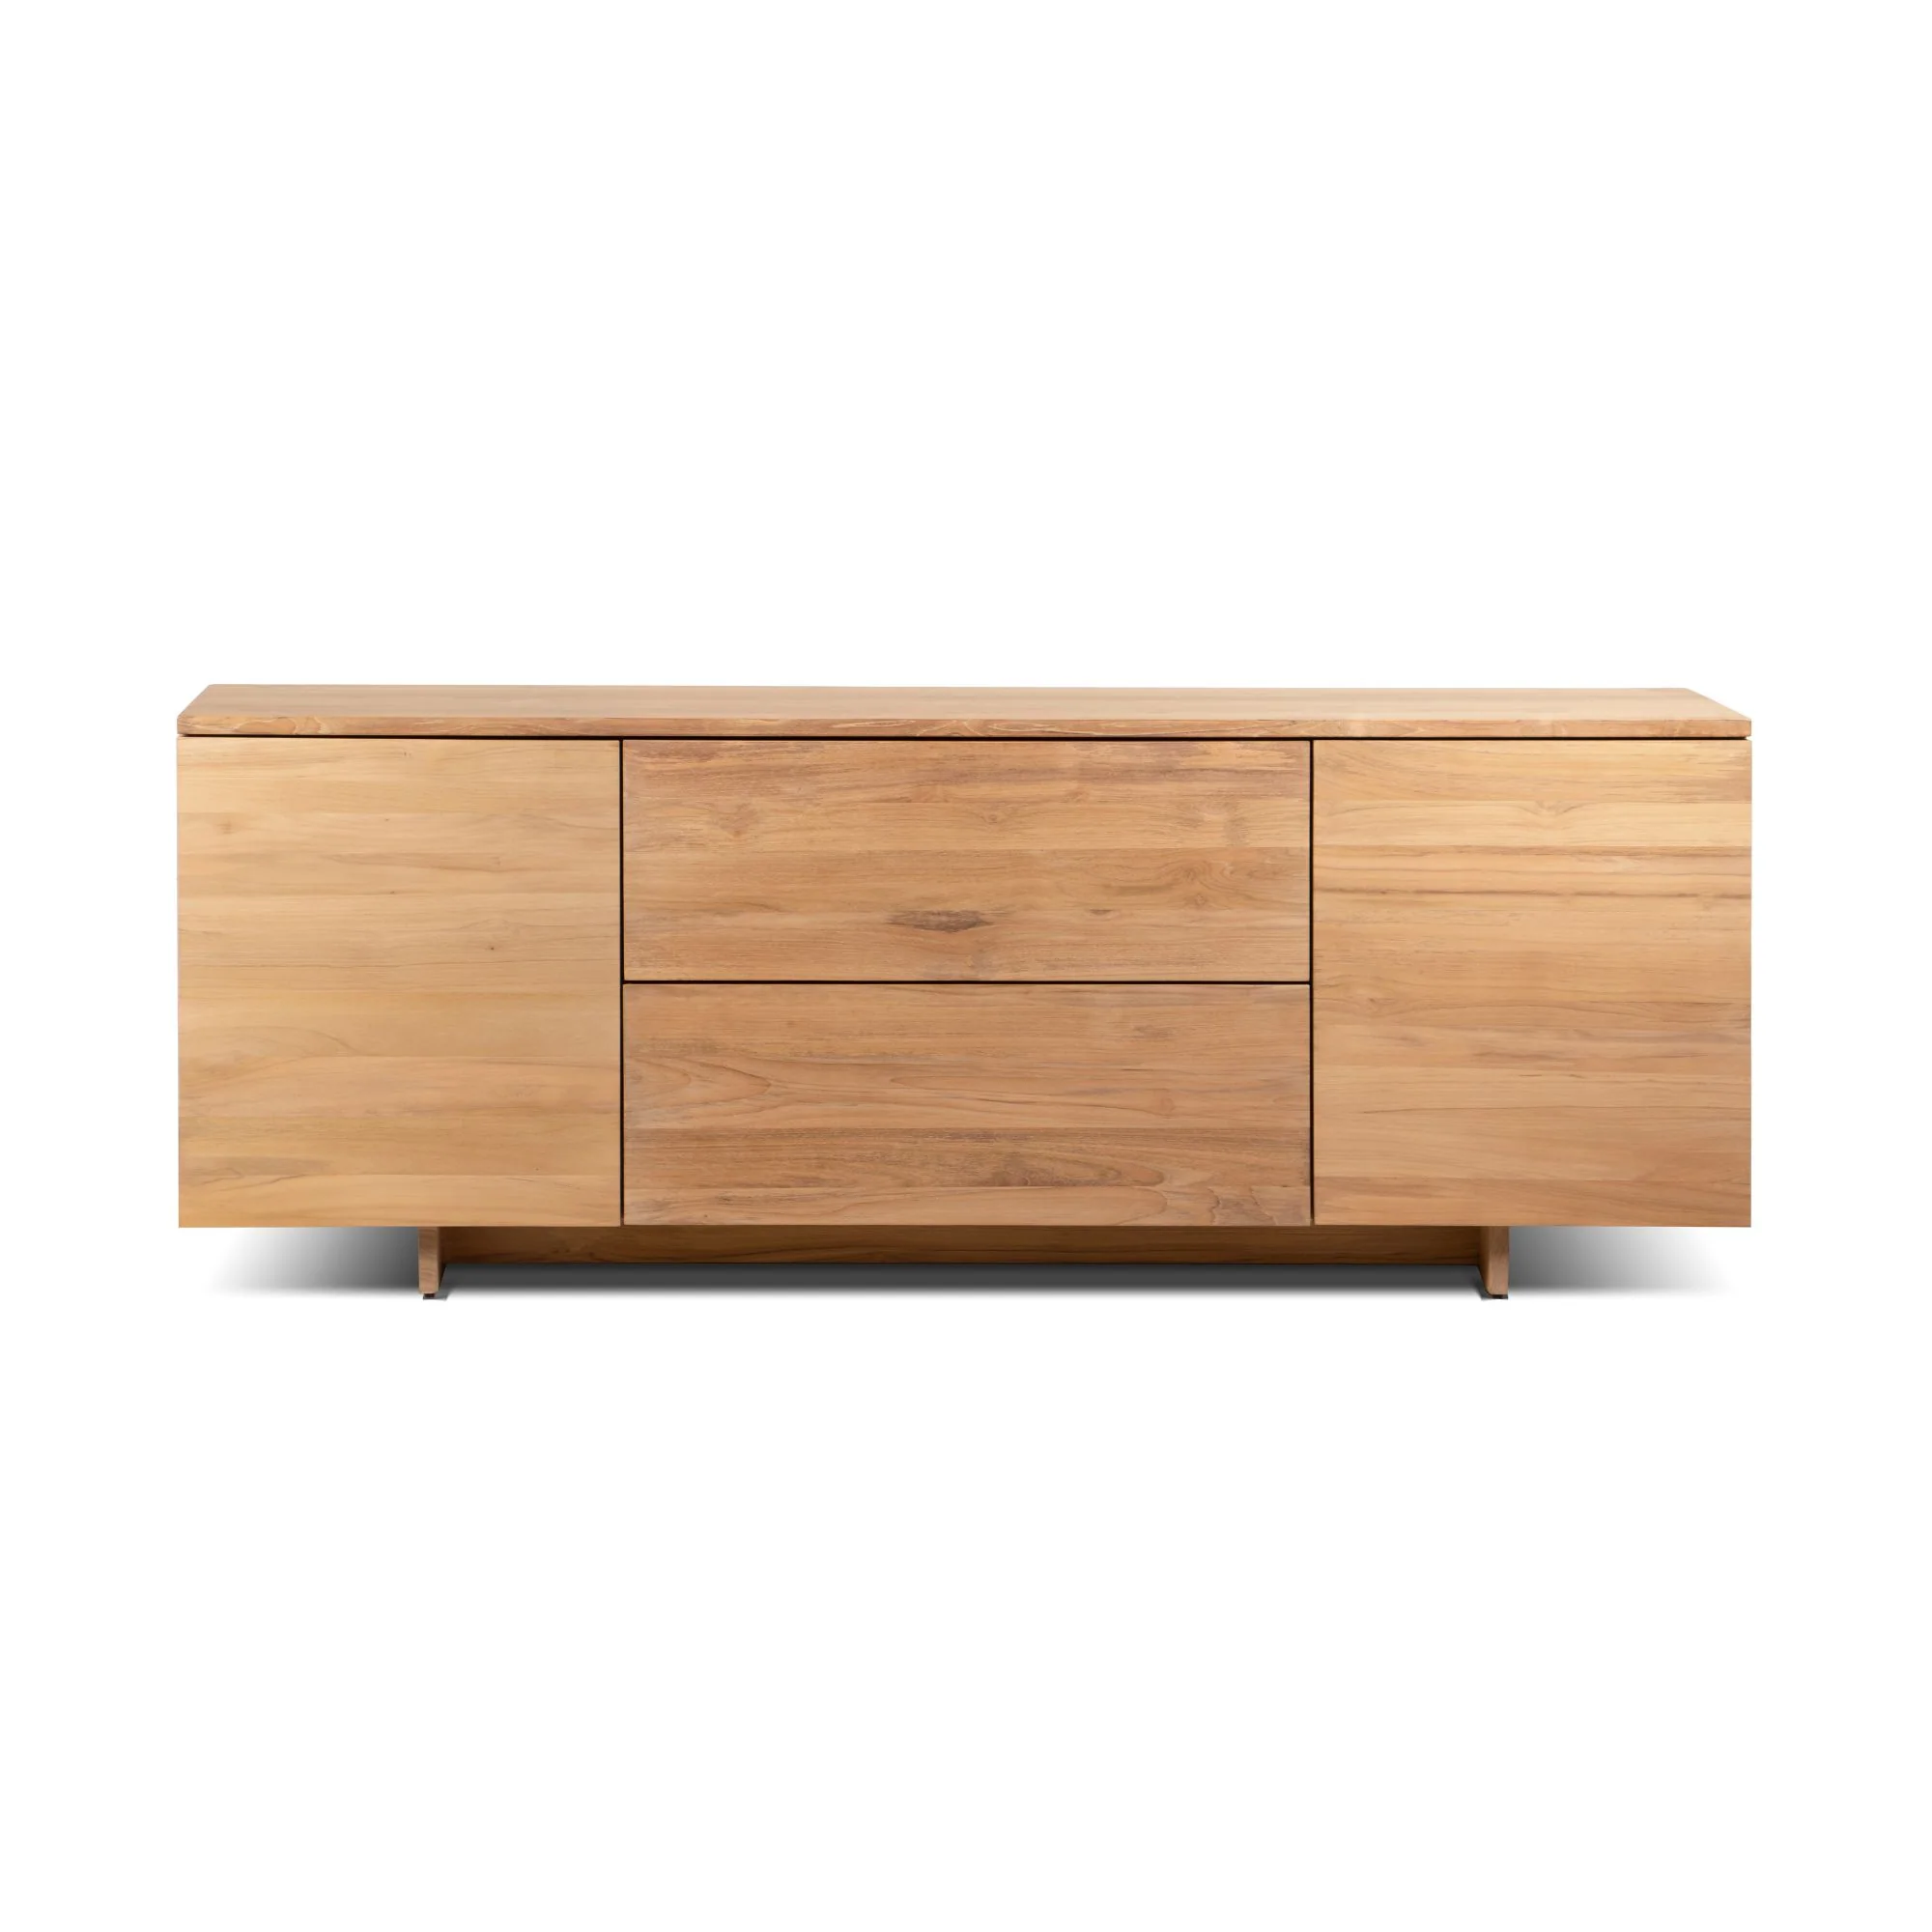 Furniture Design Australia Cabinets